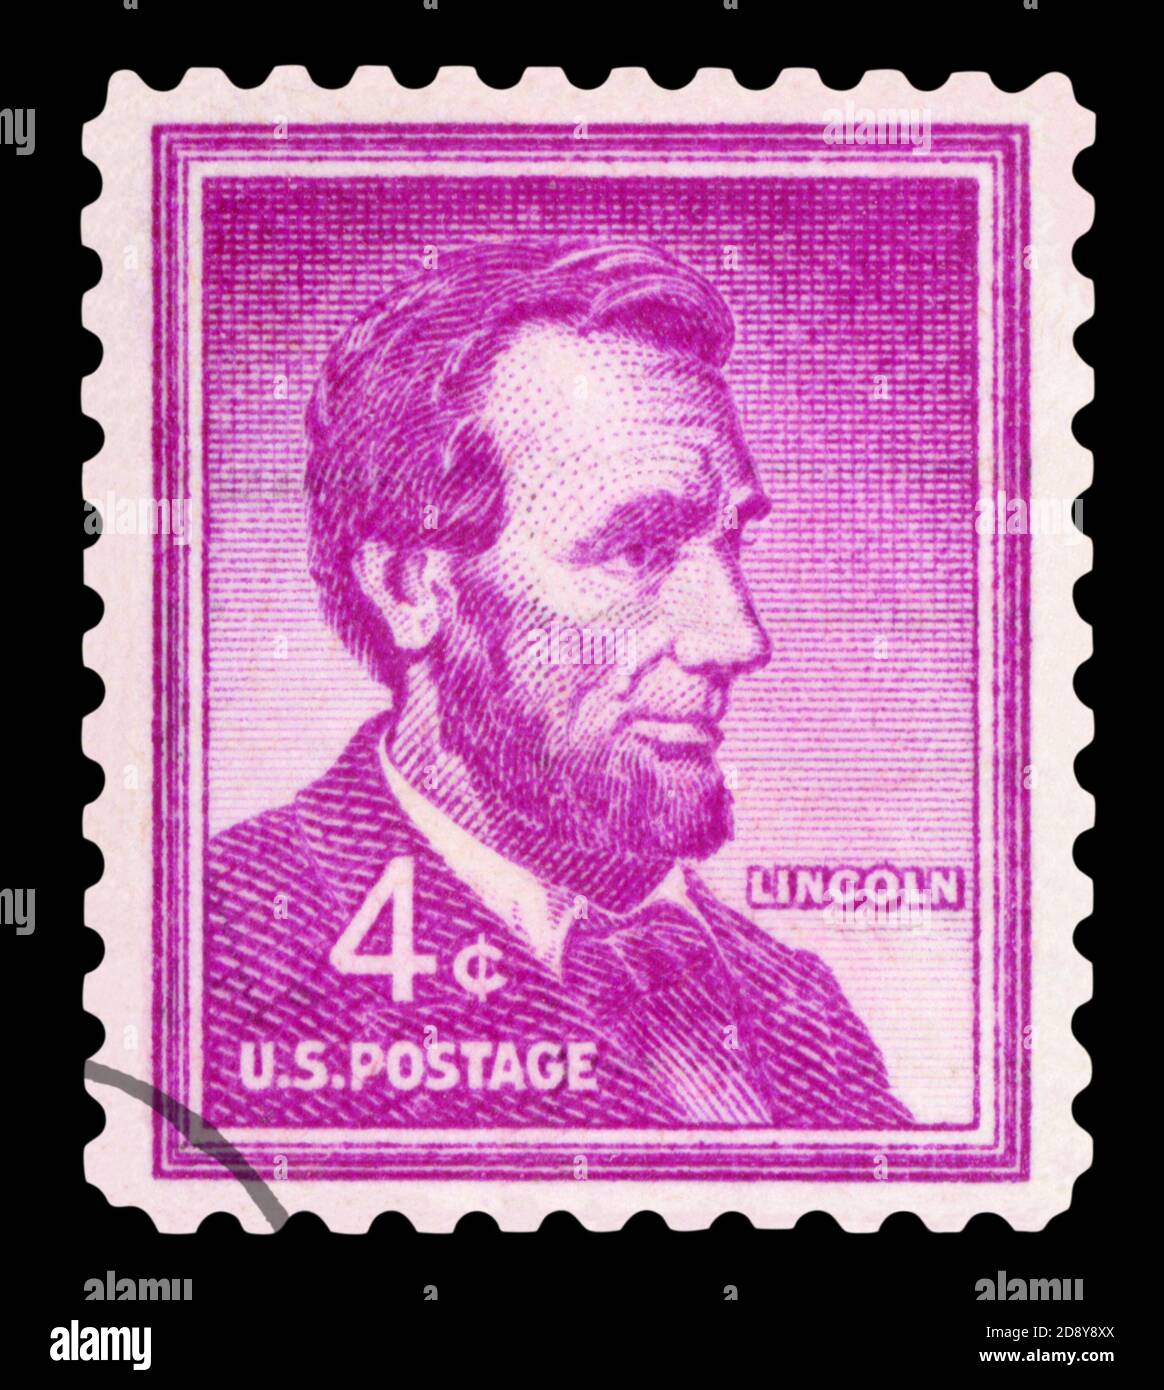 USA - VERS 1954: Un timbre imprimé aux Etats-Unis montre le portrait d'Abraham Lincoln (1809-1865) un 20ème président des Etats-Unis, vers 1954 Banque D'Images